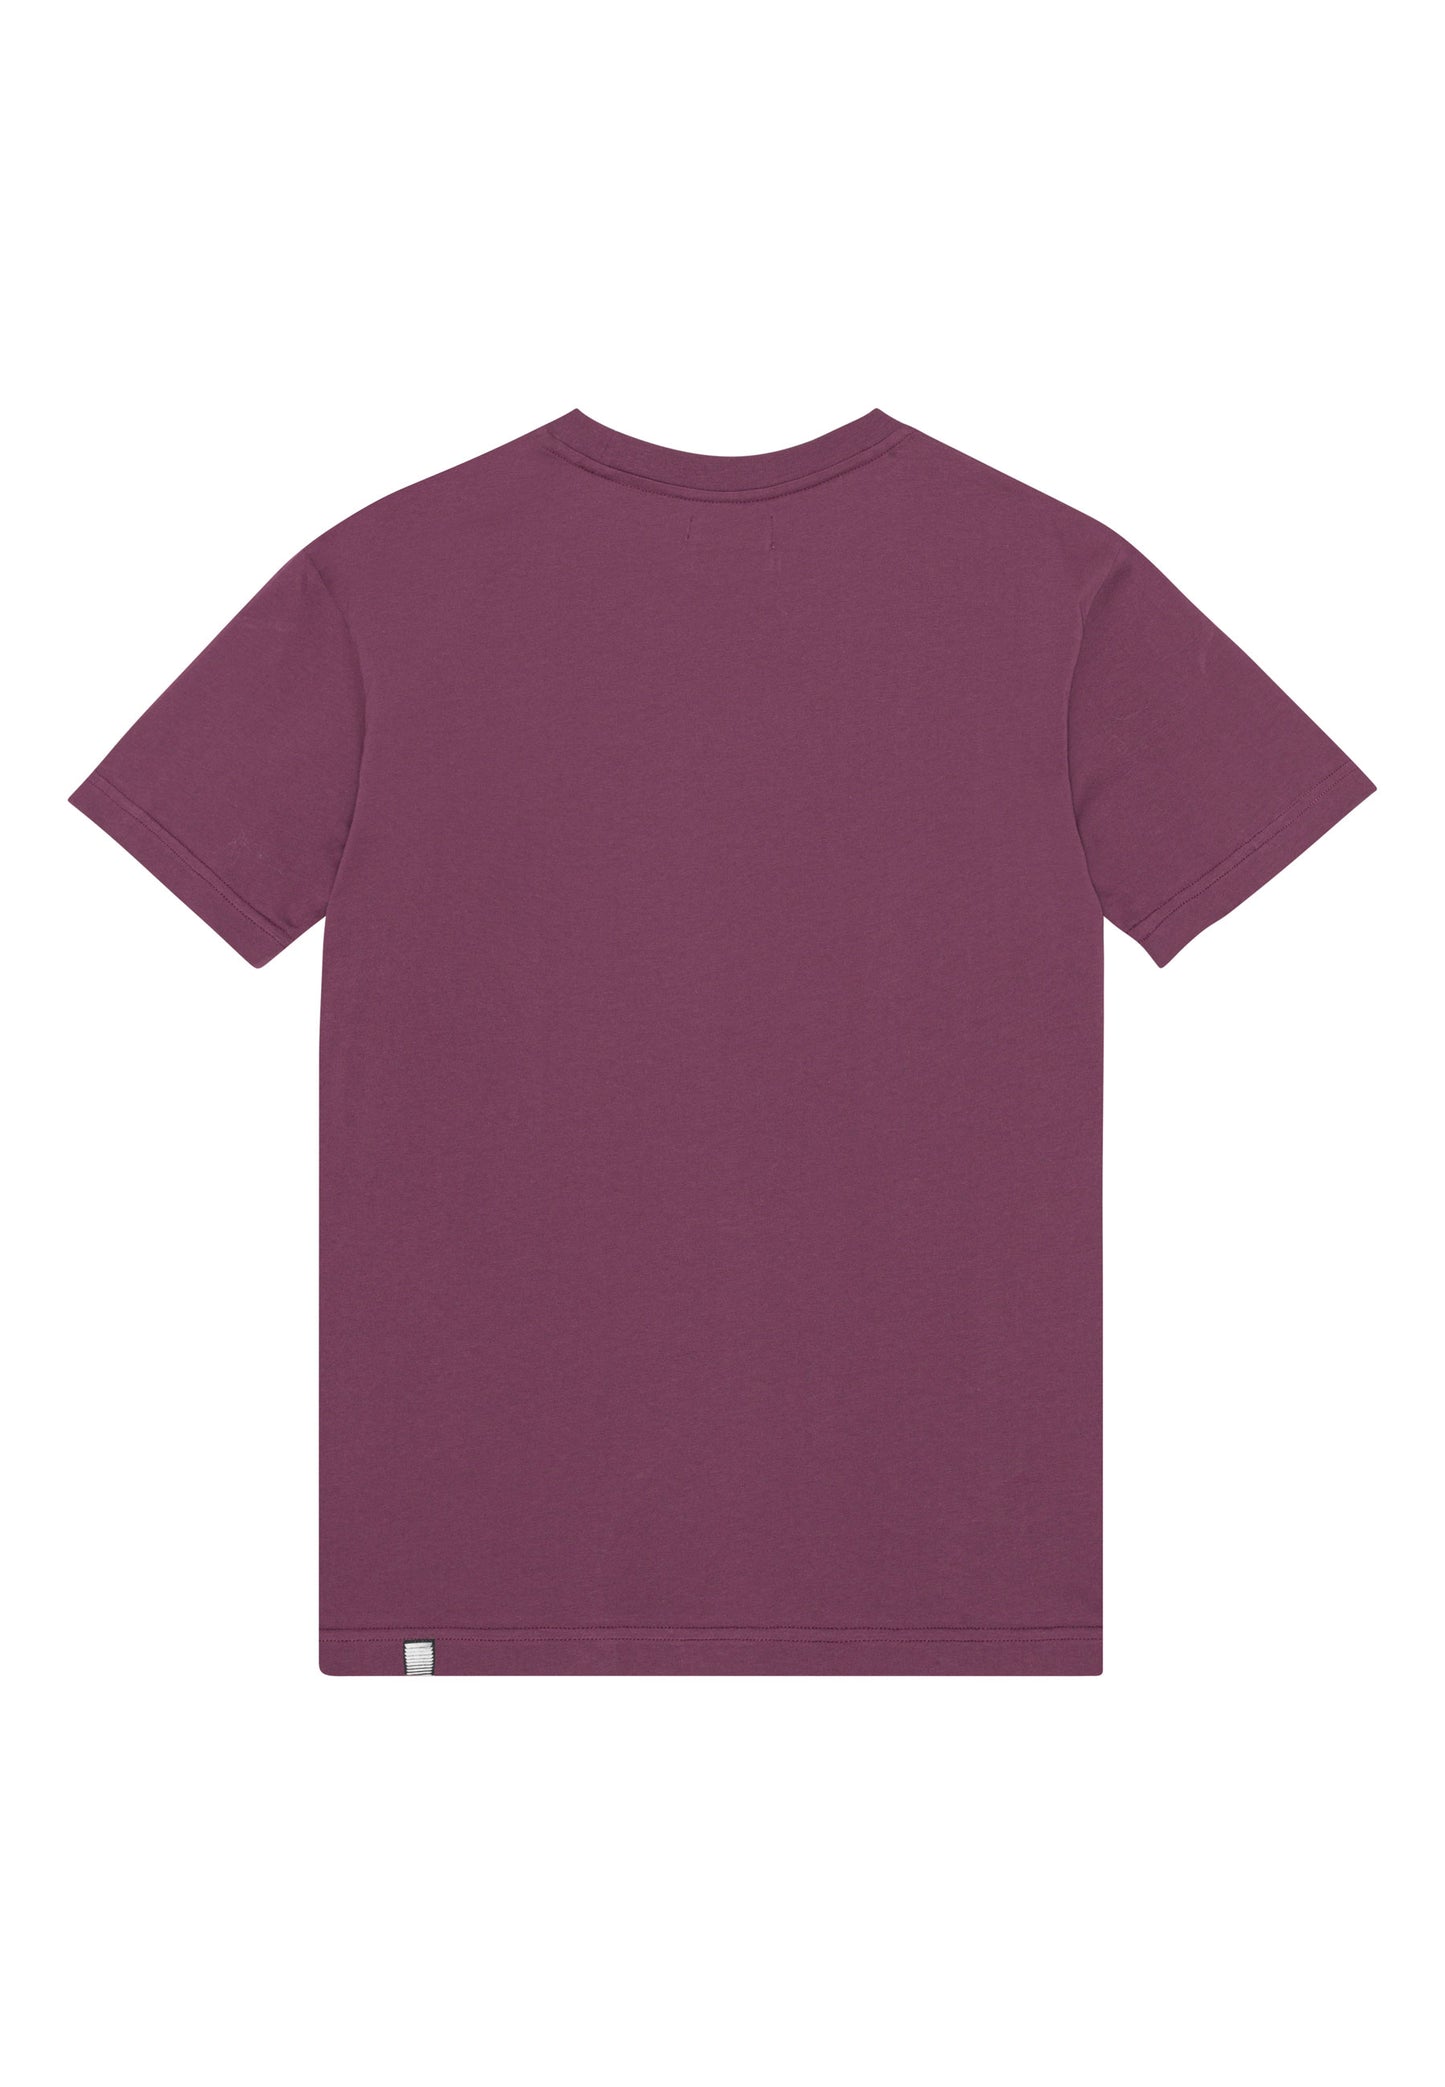 oTTo mascot - T-Shirt Burgundy